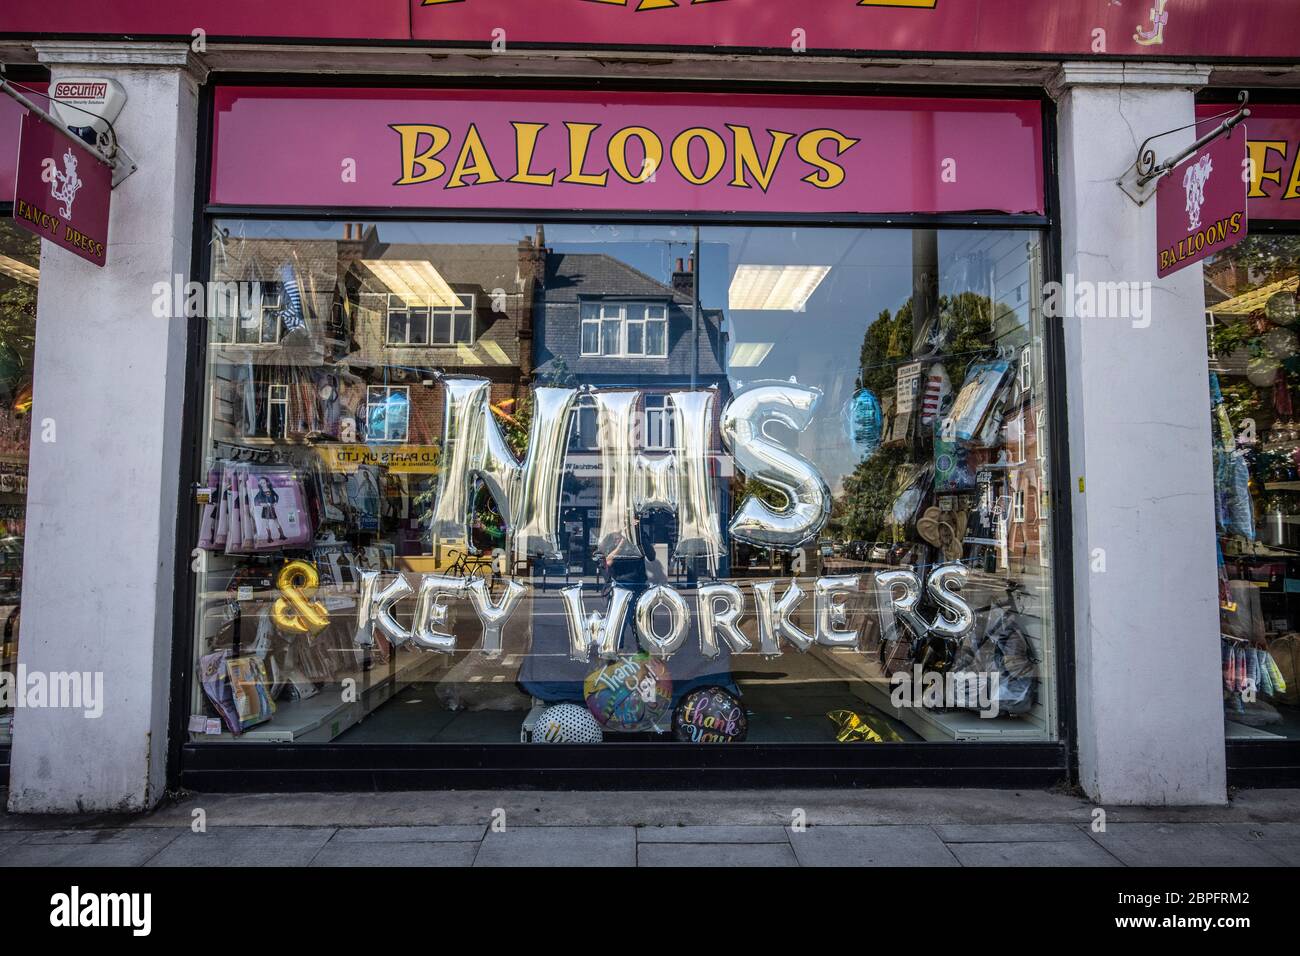 Boutique de fête à East Sheen faisant la promotion de NHS Key Workers pendant le confinement du coronavirus avec des ballons dans la vitrine du magasin, sud-ouest de Londres, Angleterre, Royaume-Uni Banque D'Images